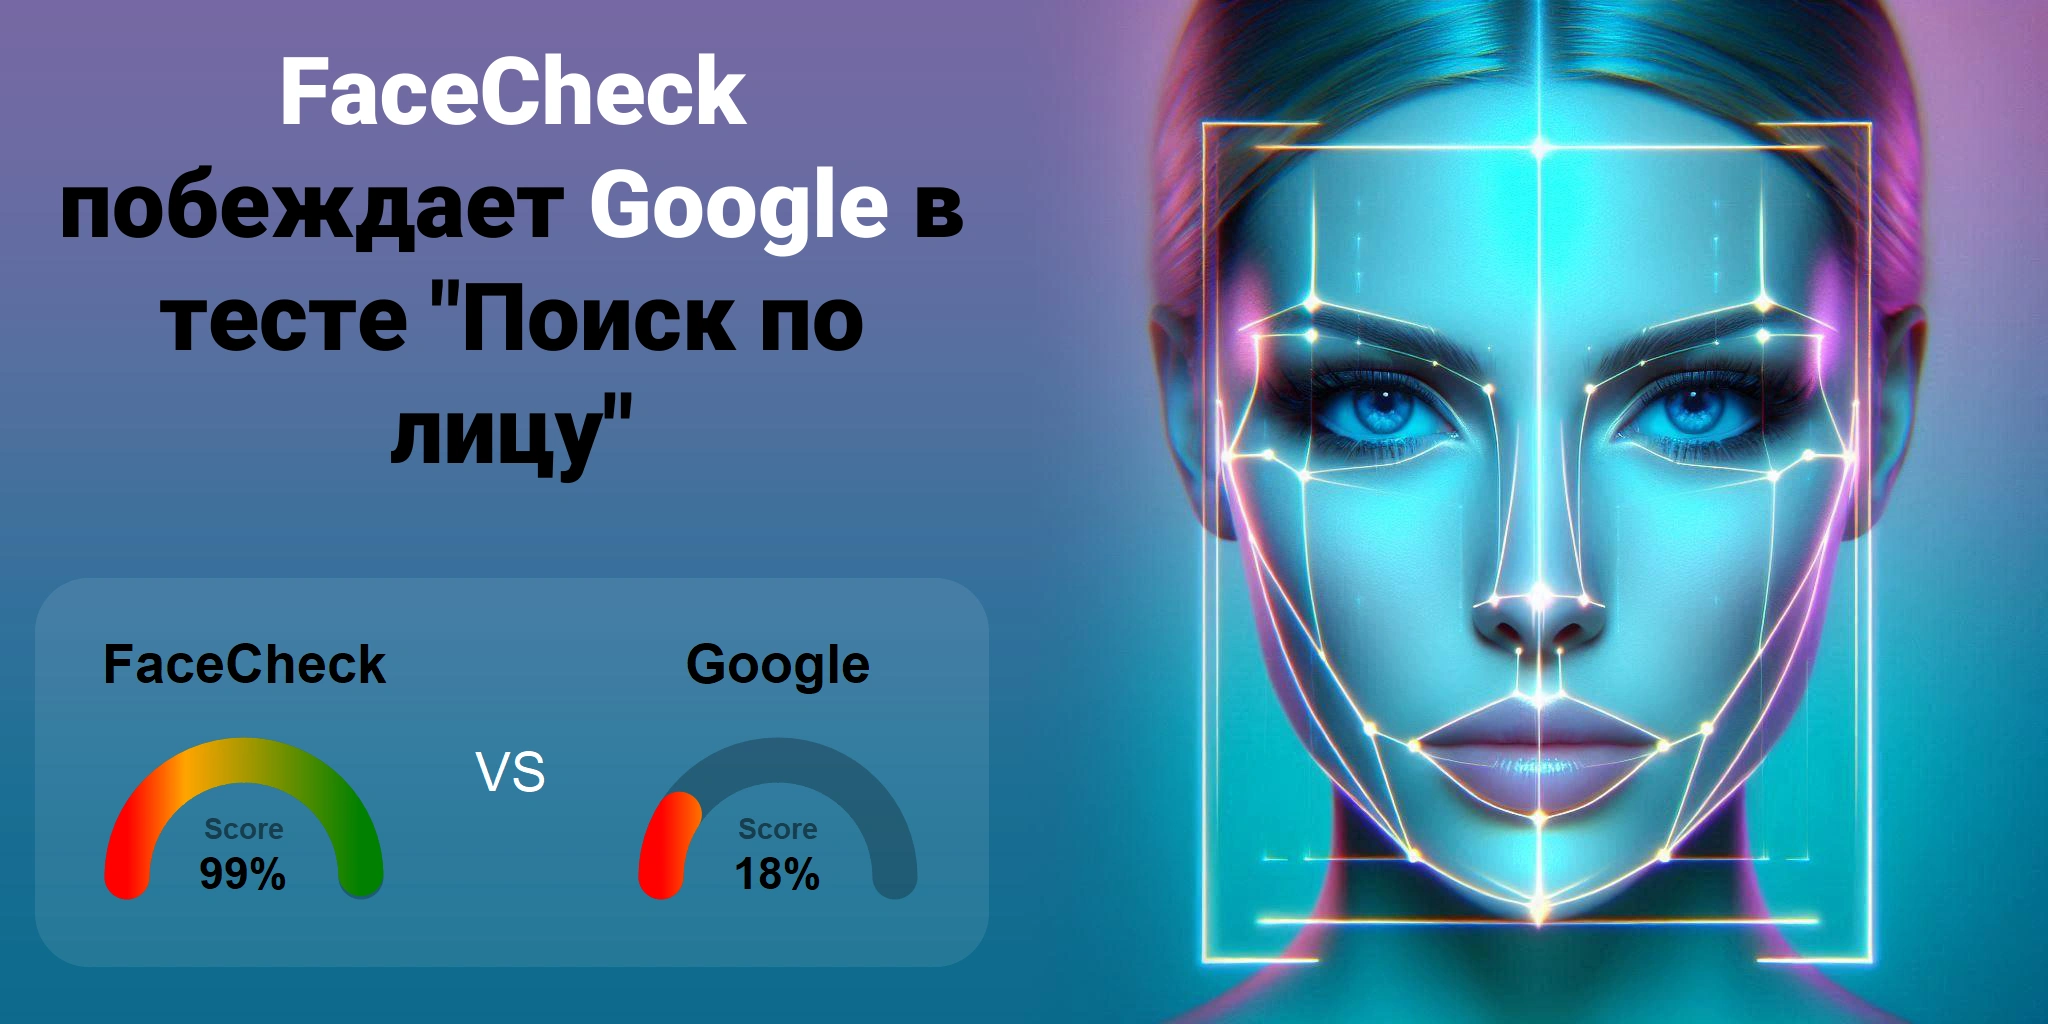 Что лучше для поиска по лицам: <br>FaceCheck или Google?